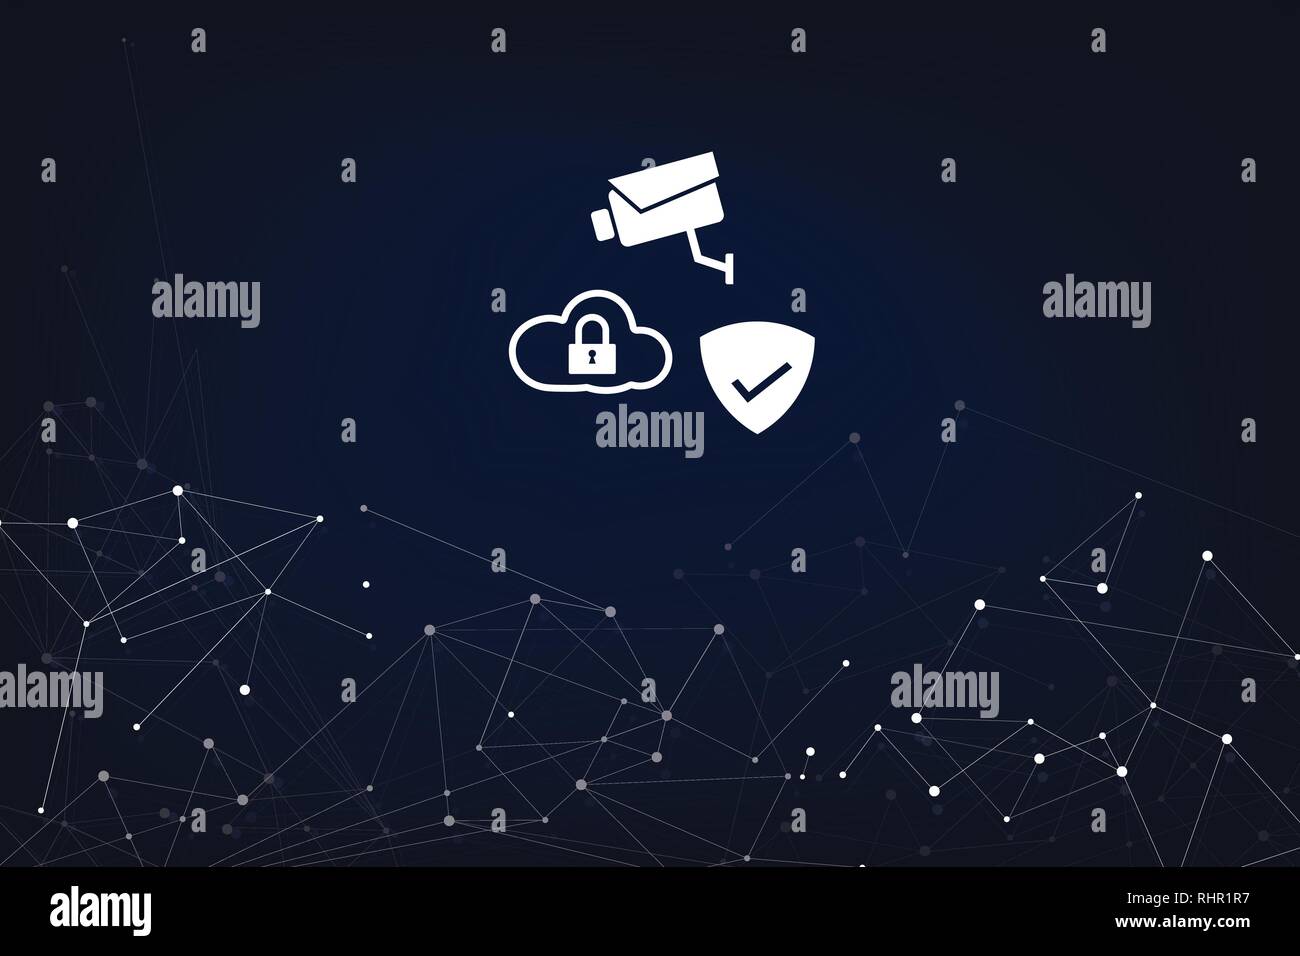 Abstrakte Digitale Netzwerk Konzept Sicherheit System mit Kamera, Cloud und Schild mit Abstrakten dunklen Hintergrund Stock Vektor